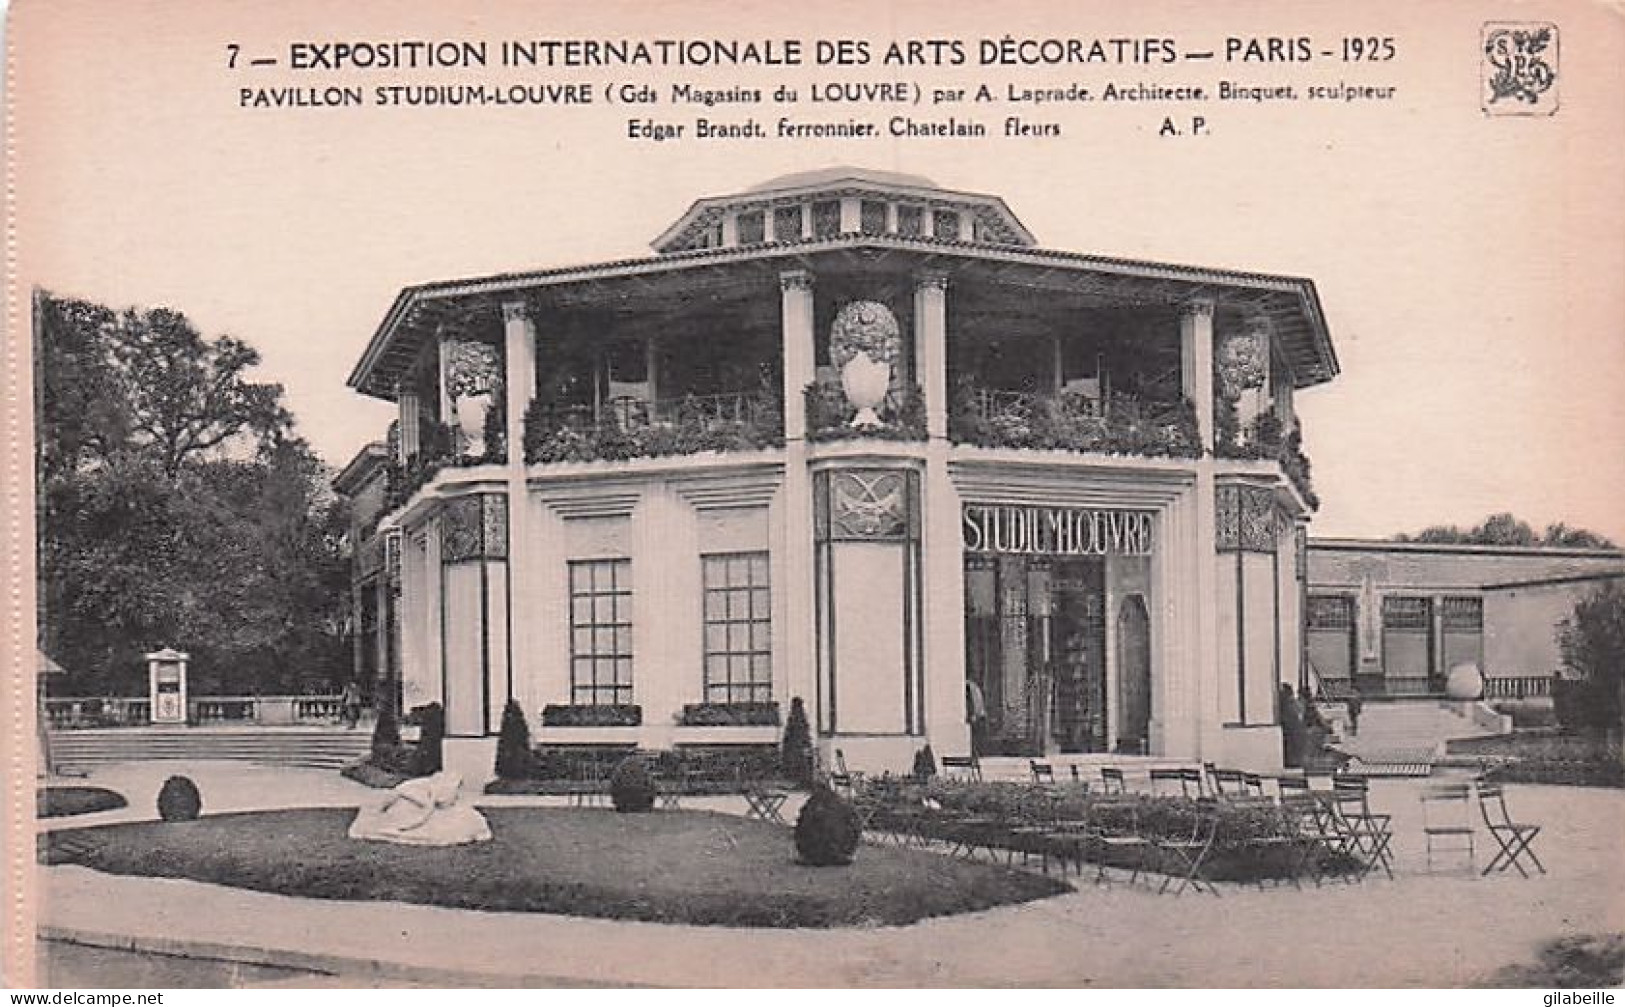 75 - PARIS - exposition des arts decoratifs - lot 9 cartes